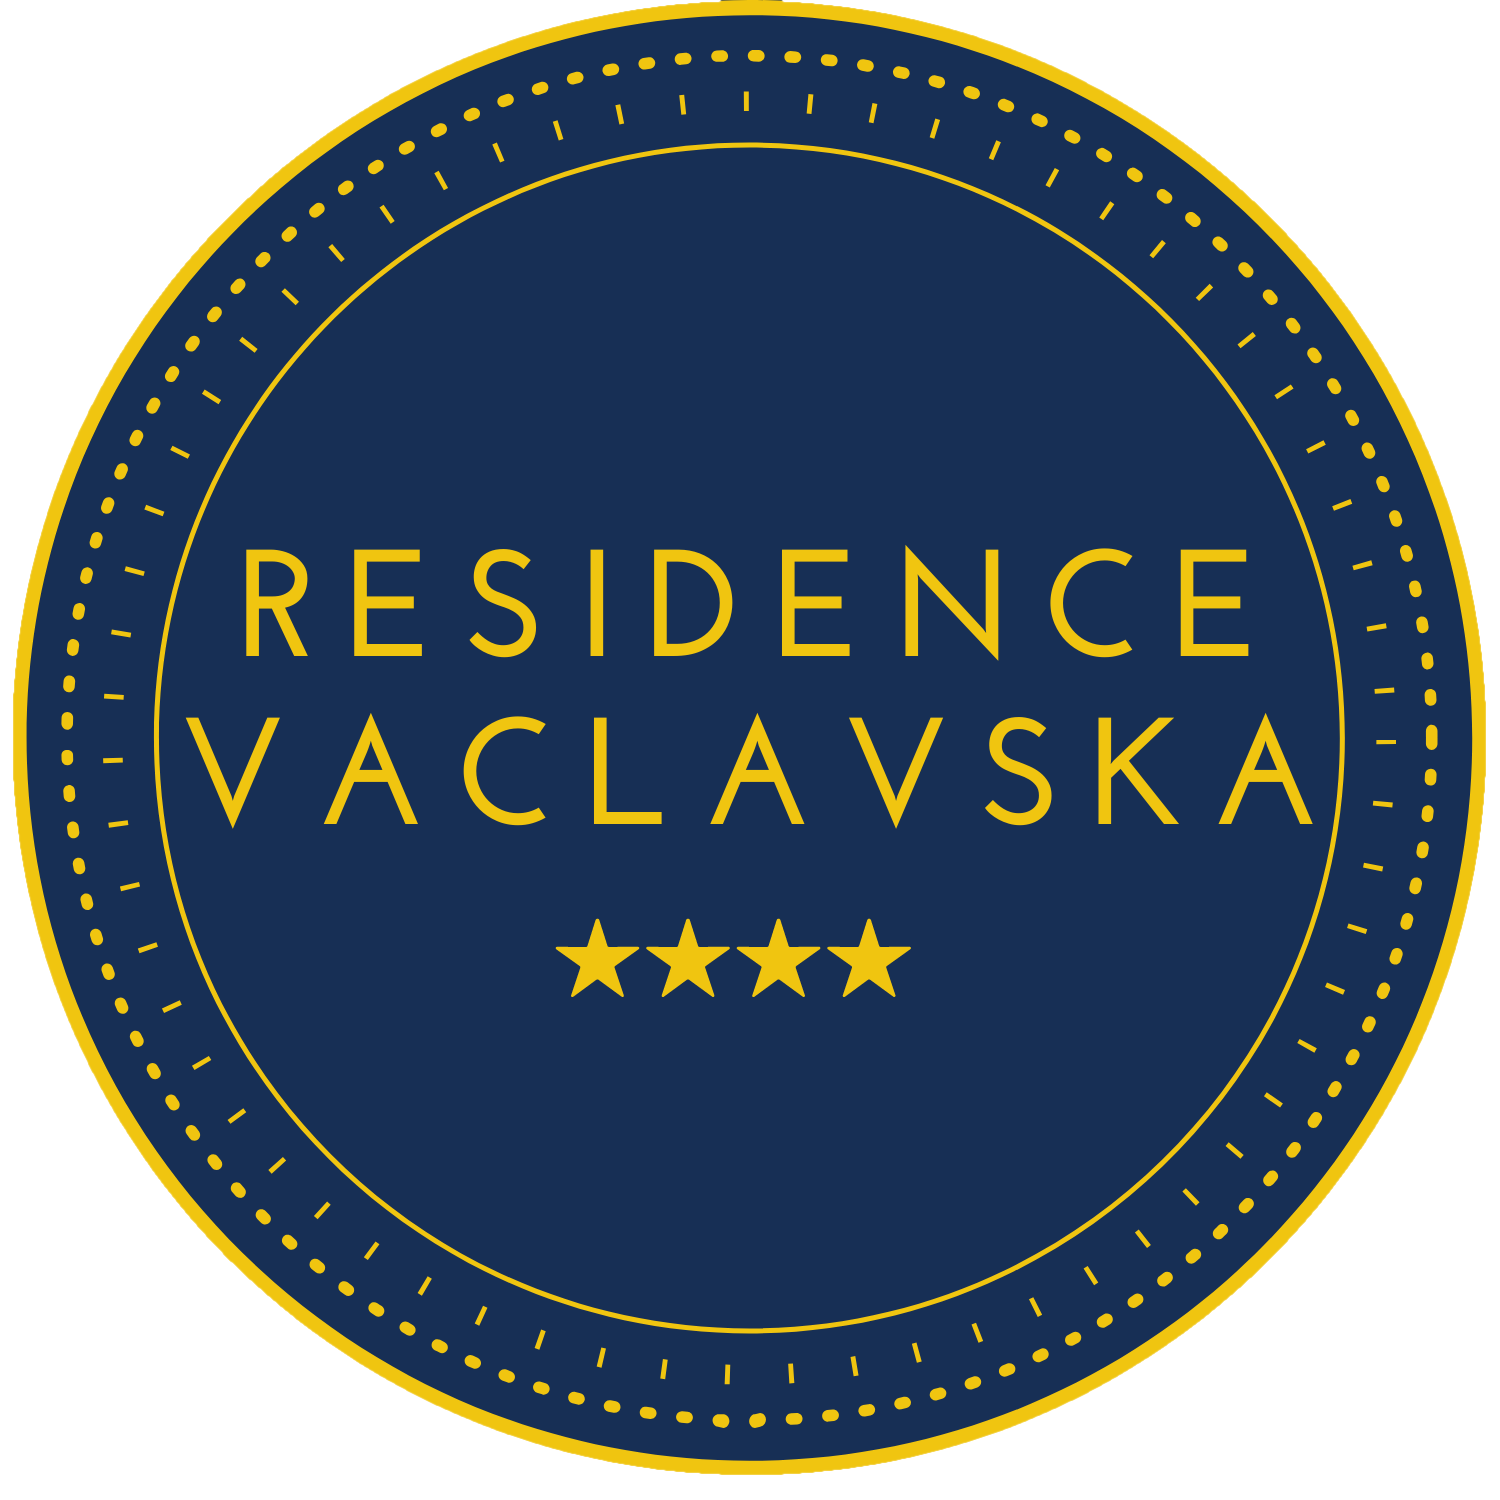 Residence Vaclavska